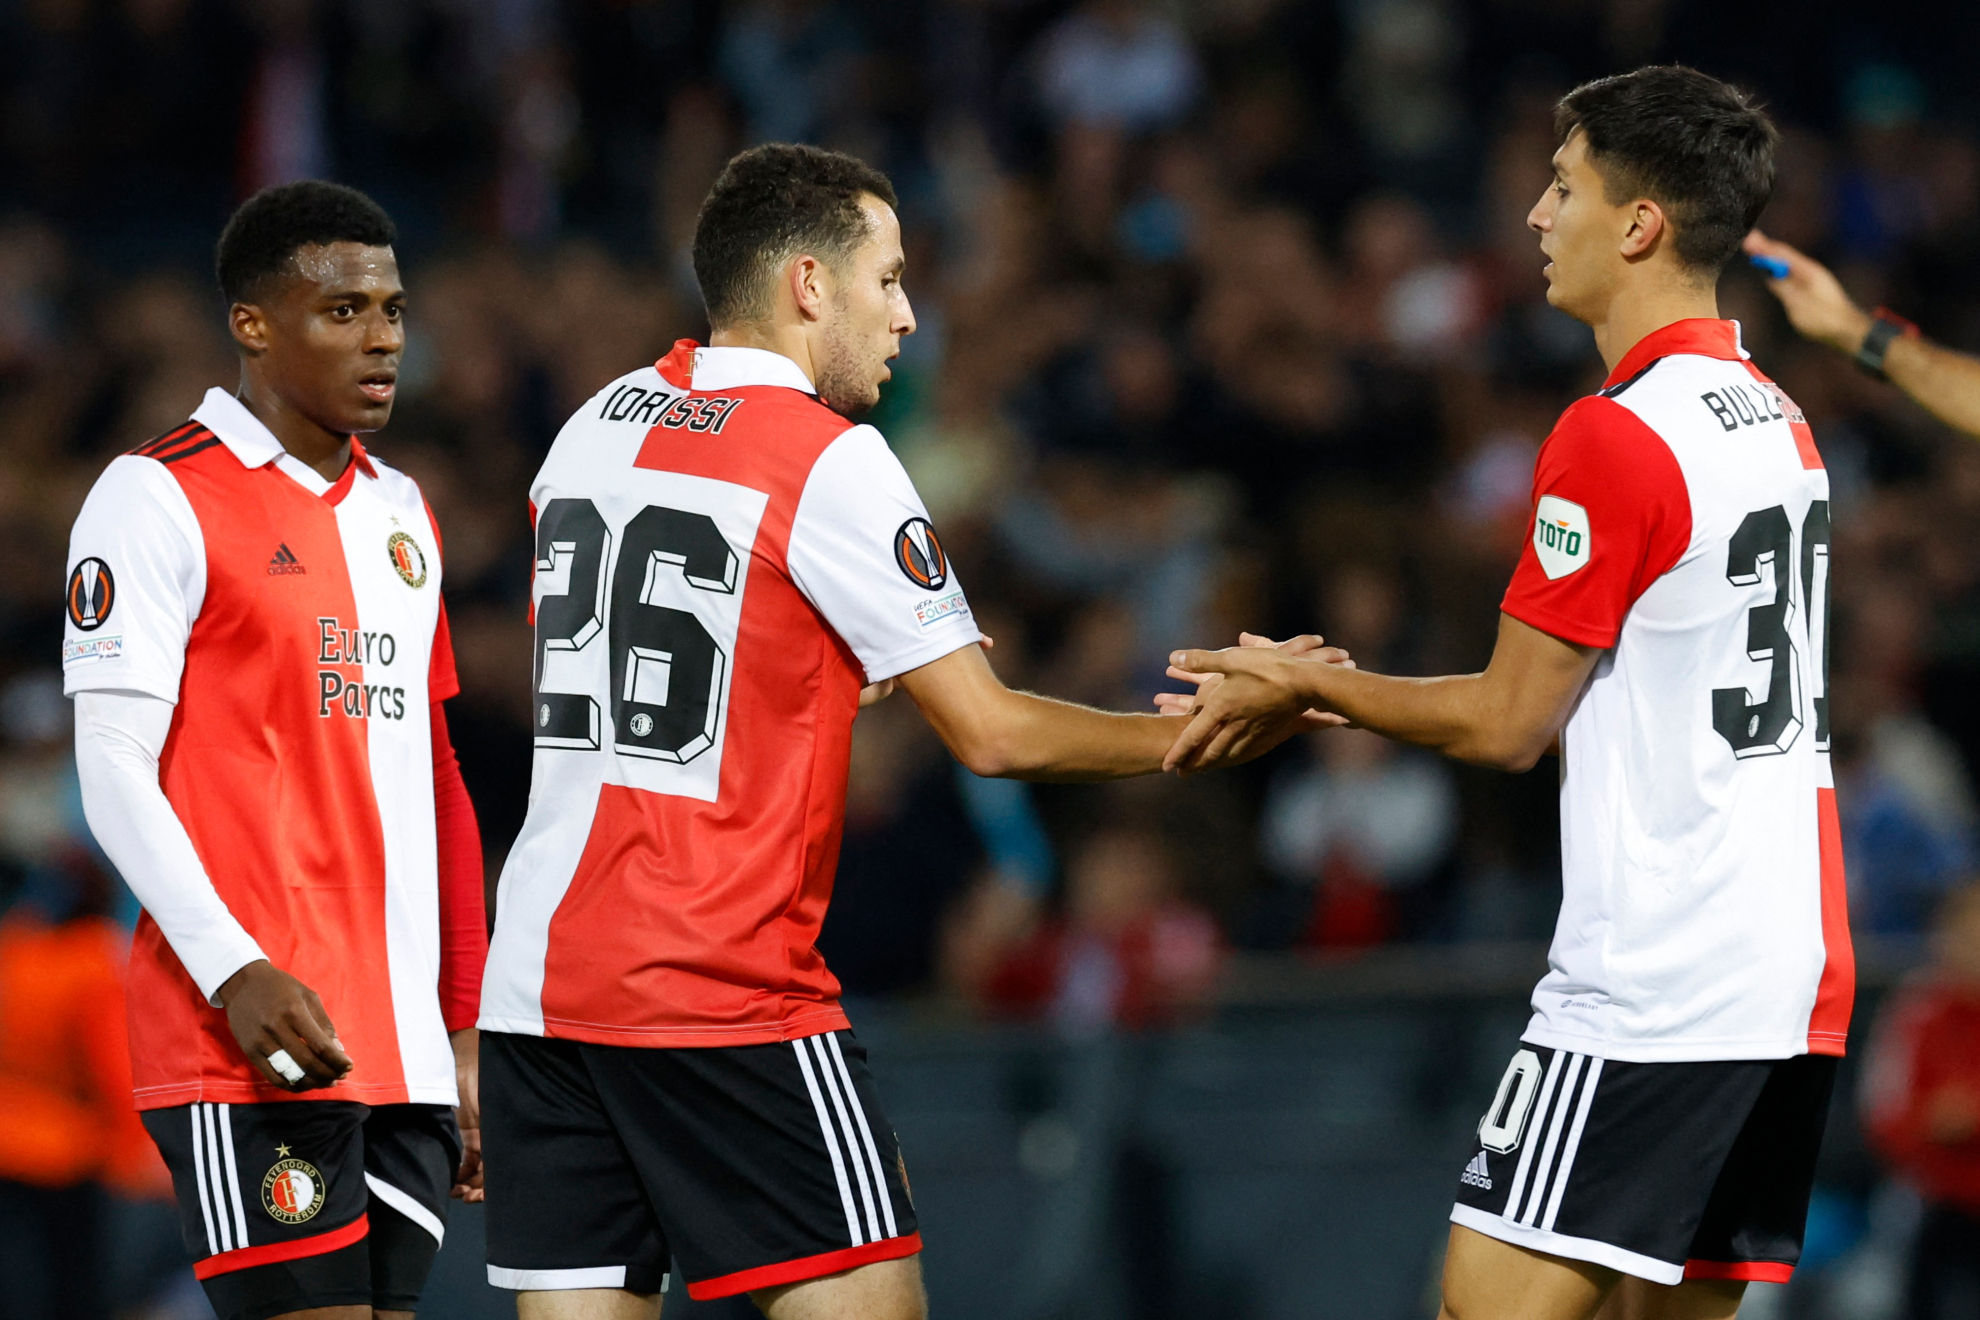 Feyenoord de Santiago Giménez no pasa del empate ante el Midtjyalland